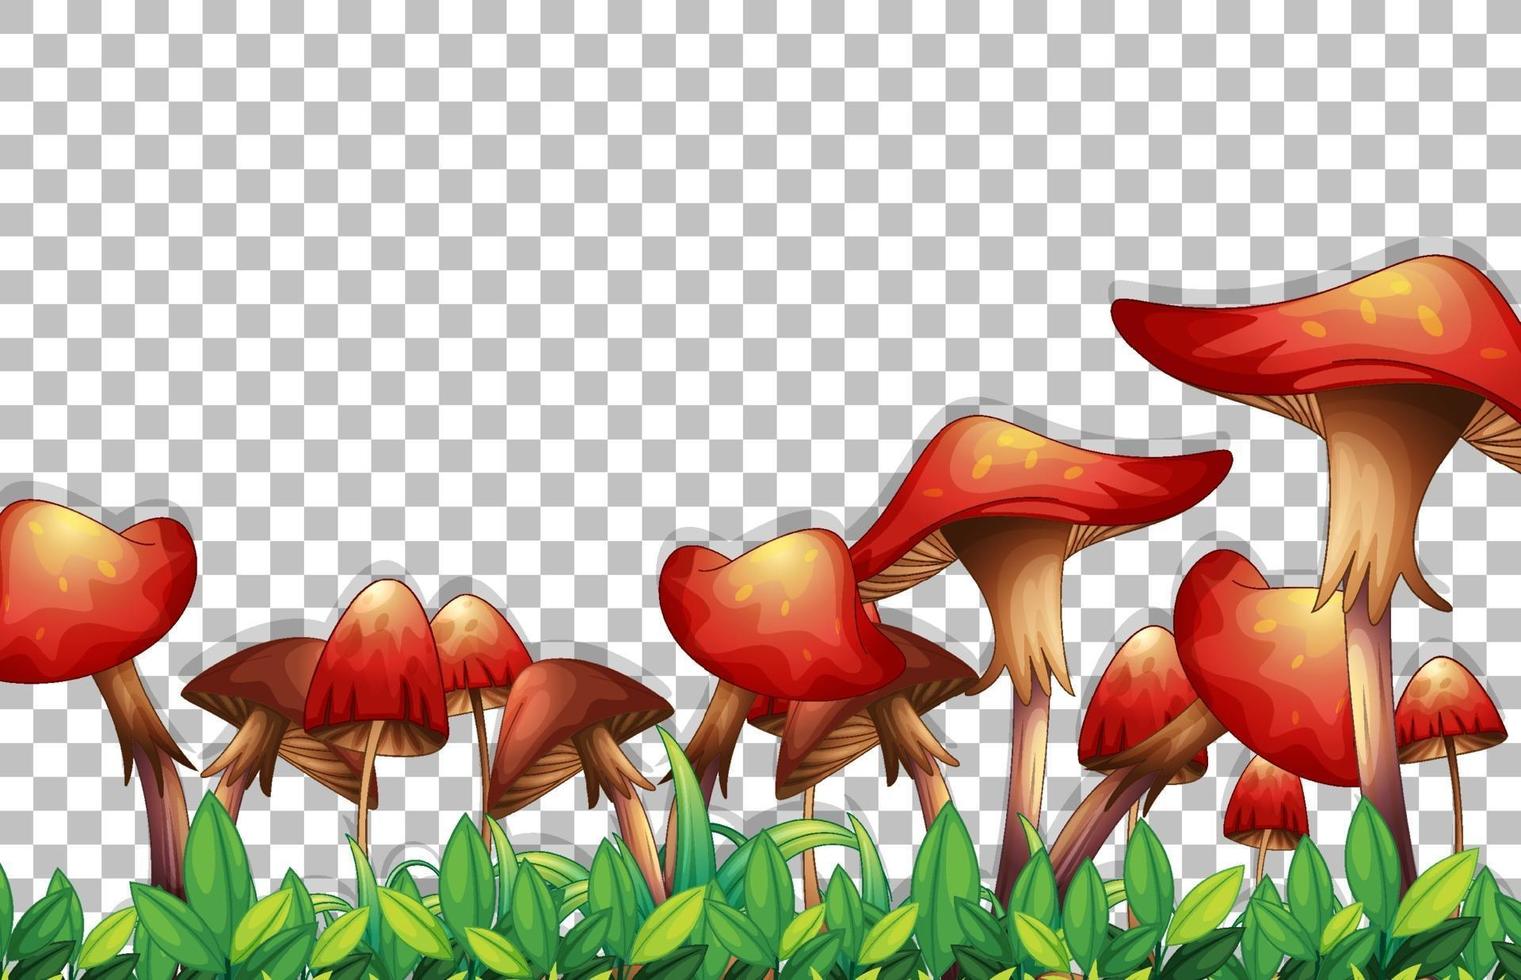 funghi e foglie isolate vettore